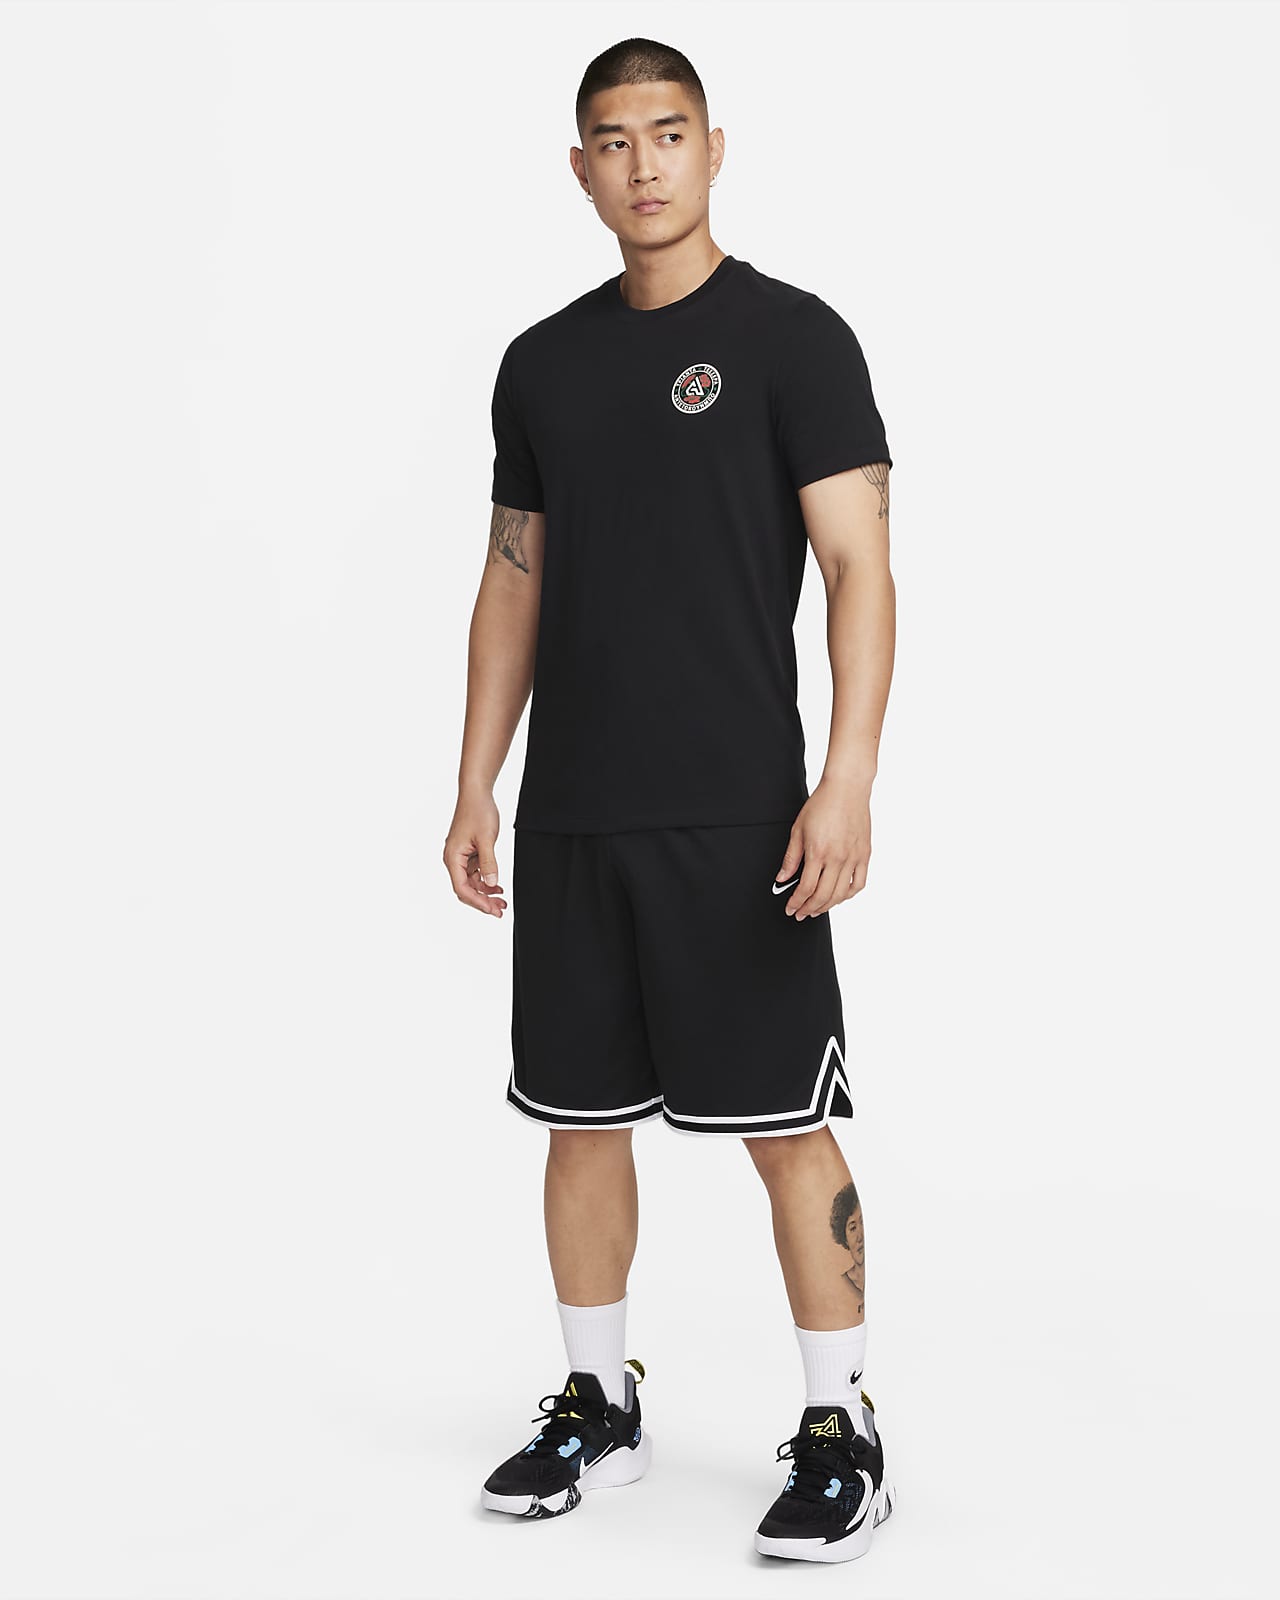 Nike Men's Giannis Dri-Fit Freak Basketball T-Shirt White Medium